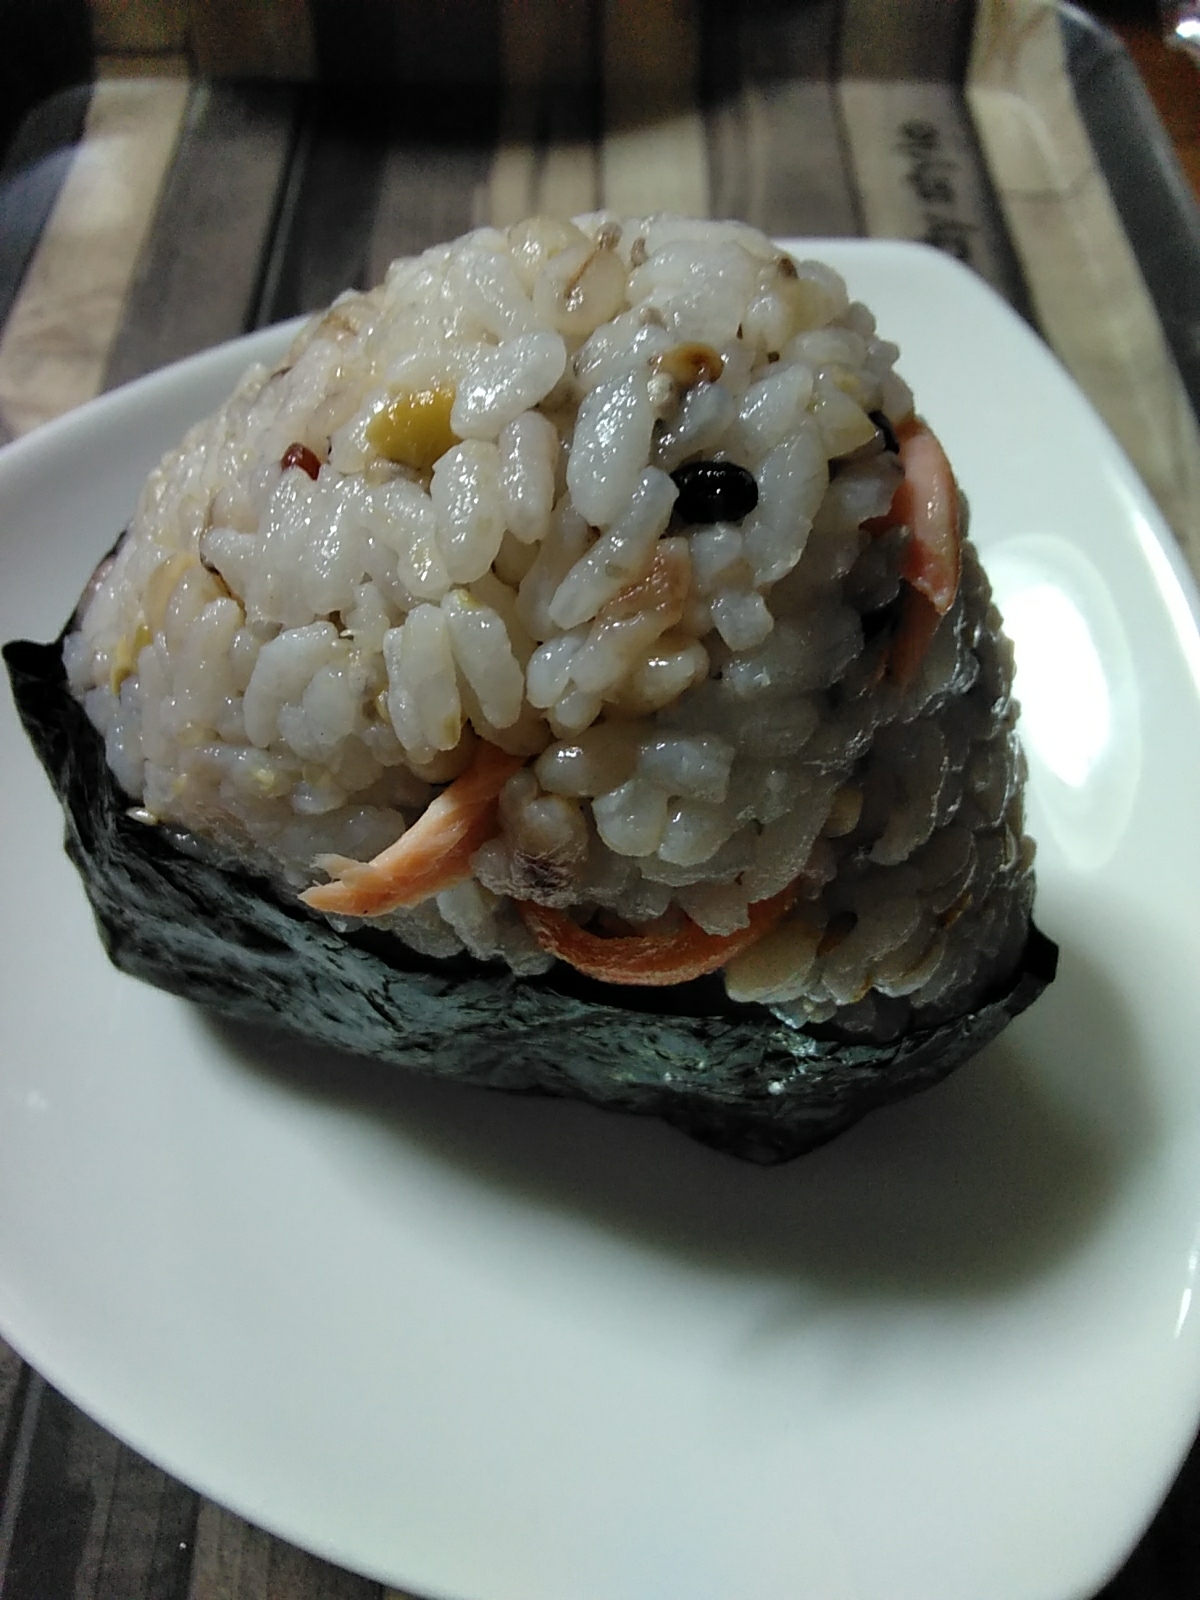 おっきな鮭むすび(雑穀米)